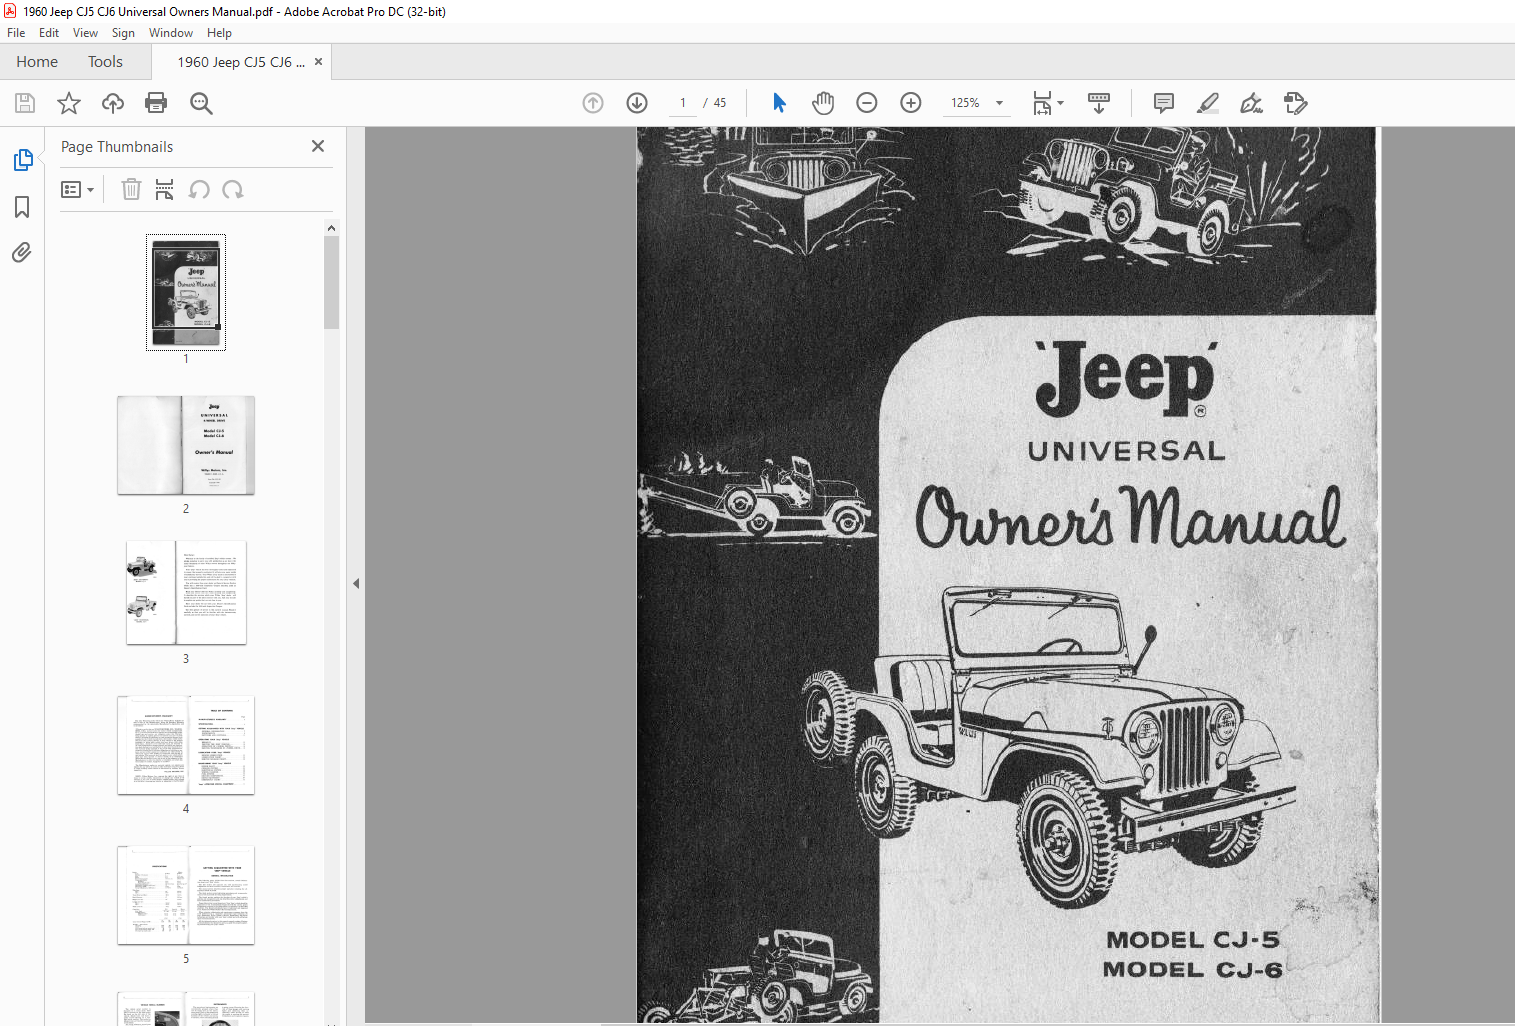 1960 Jeep CJ5 CJ6 Universal Owners Manual - PDF DOWNLOAD - HeyDownloads -  Manual Downloads